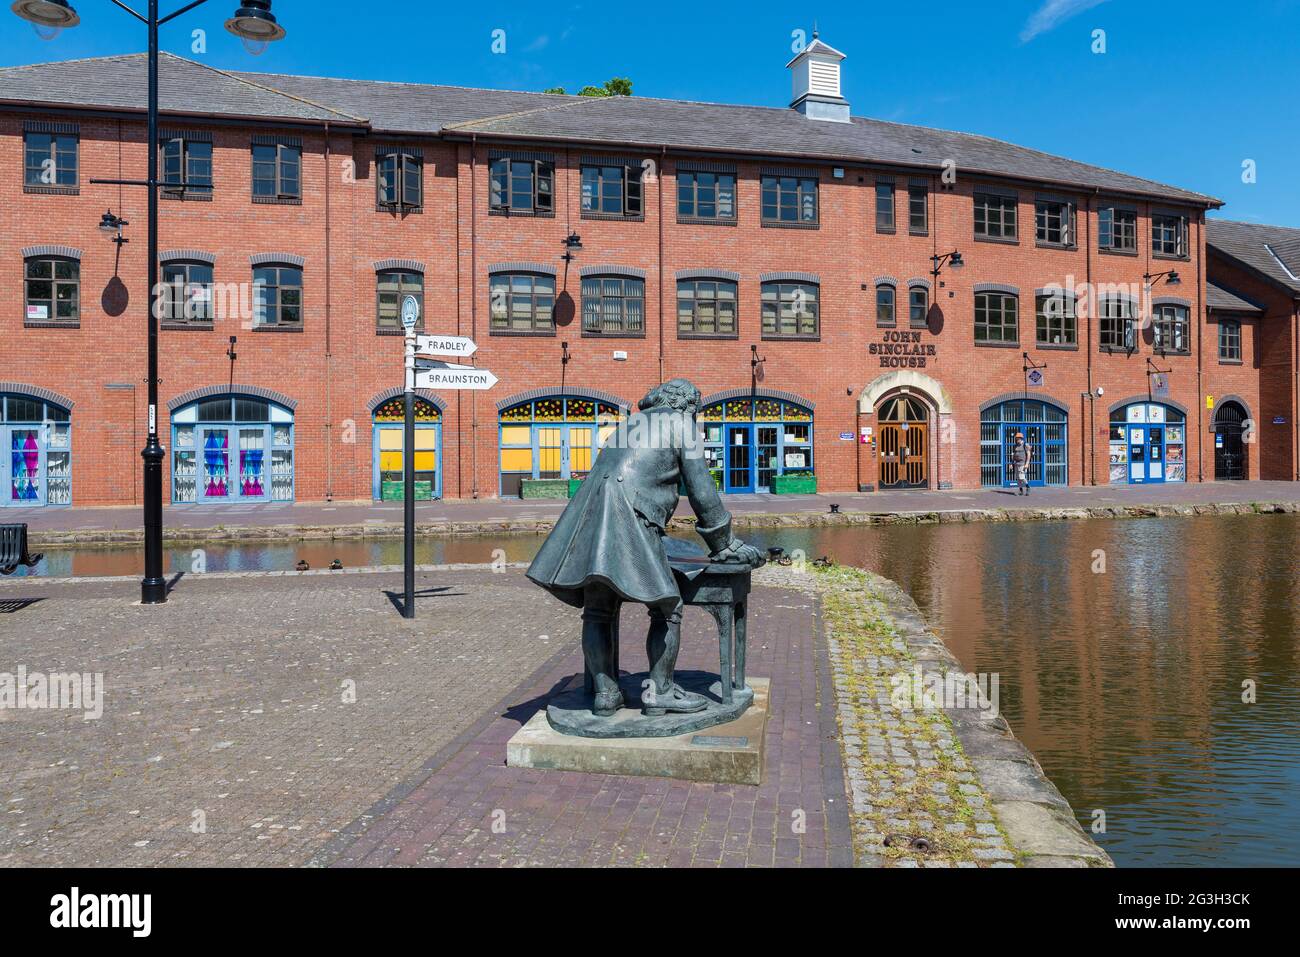 Statue de bronze de James Brindley ingénieur à Coventry Canal Basin dans la ville de Coventry, West Midlands, Royaume-Uni Banque D'Images